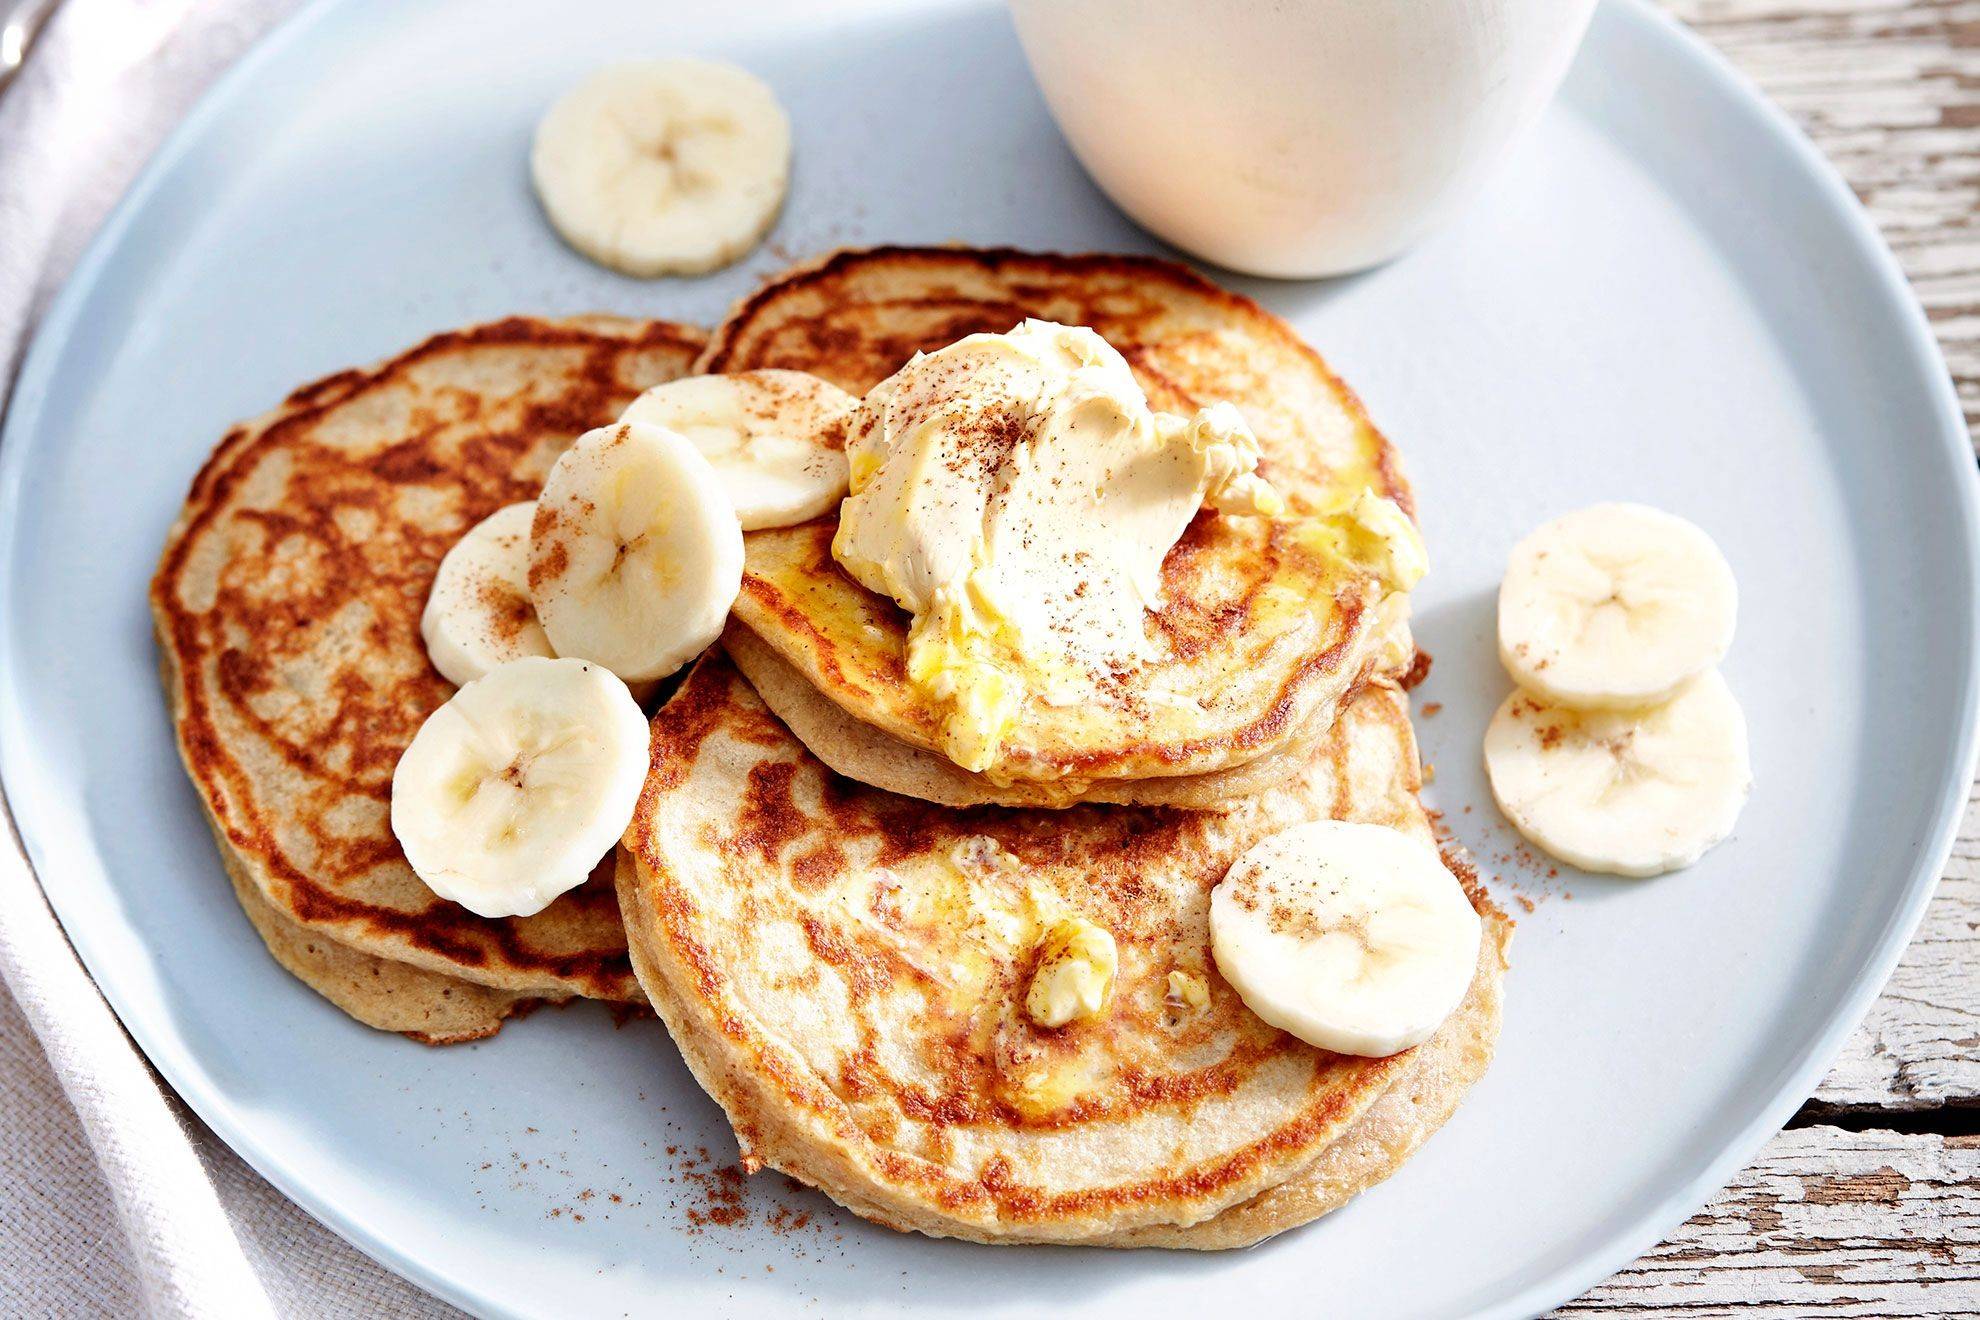 Банановые оладьи из 2 ингредиентов – идея для пп-завтрака